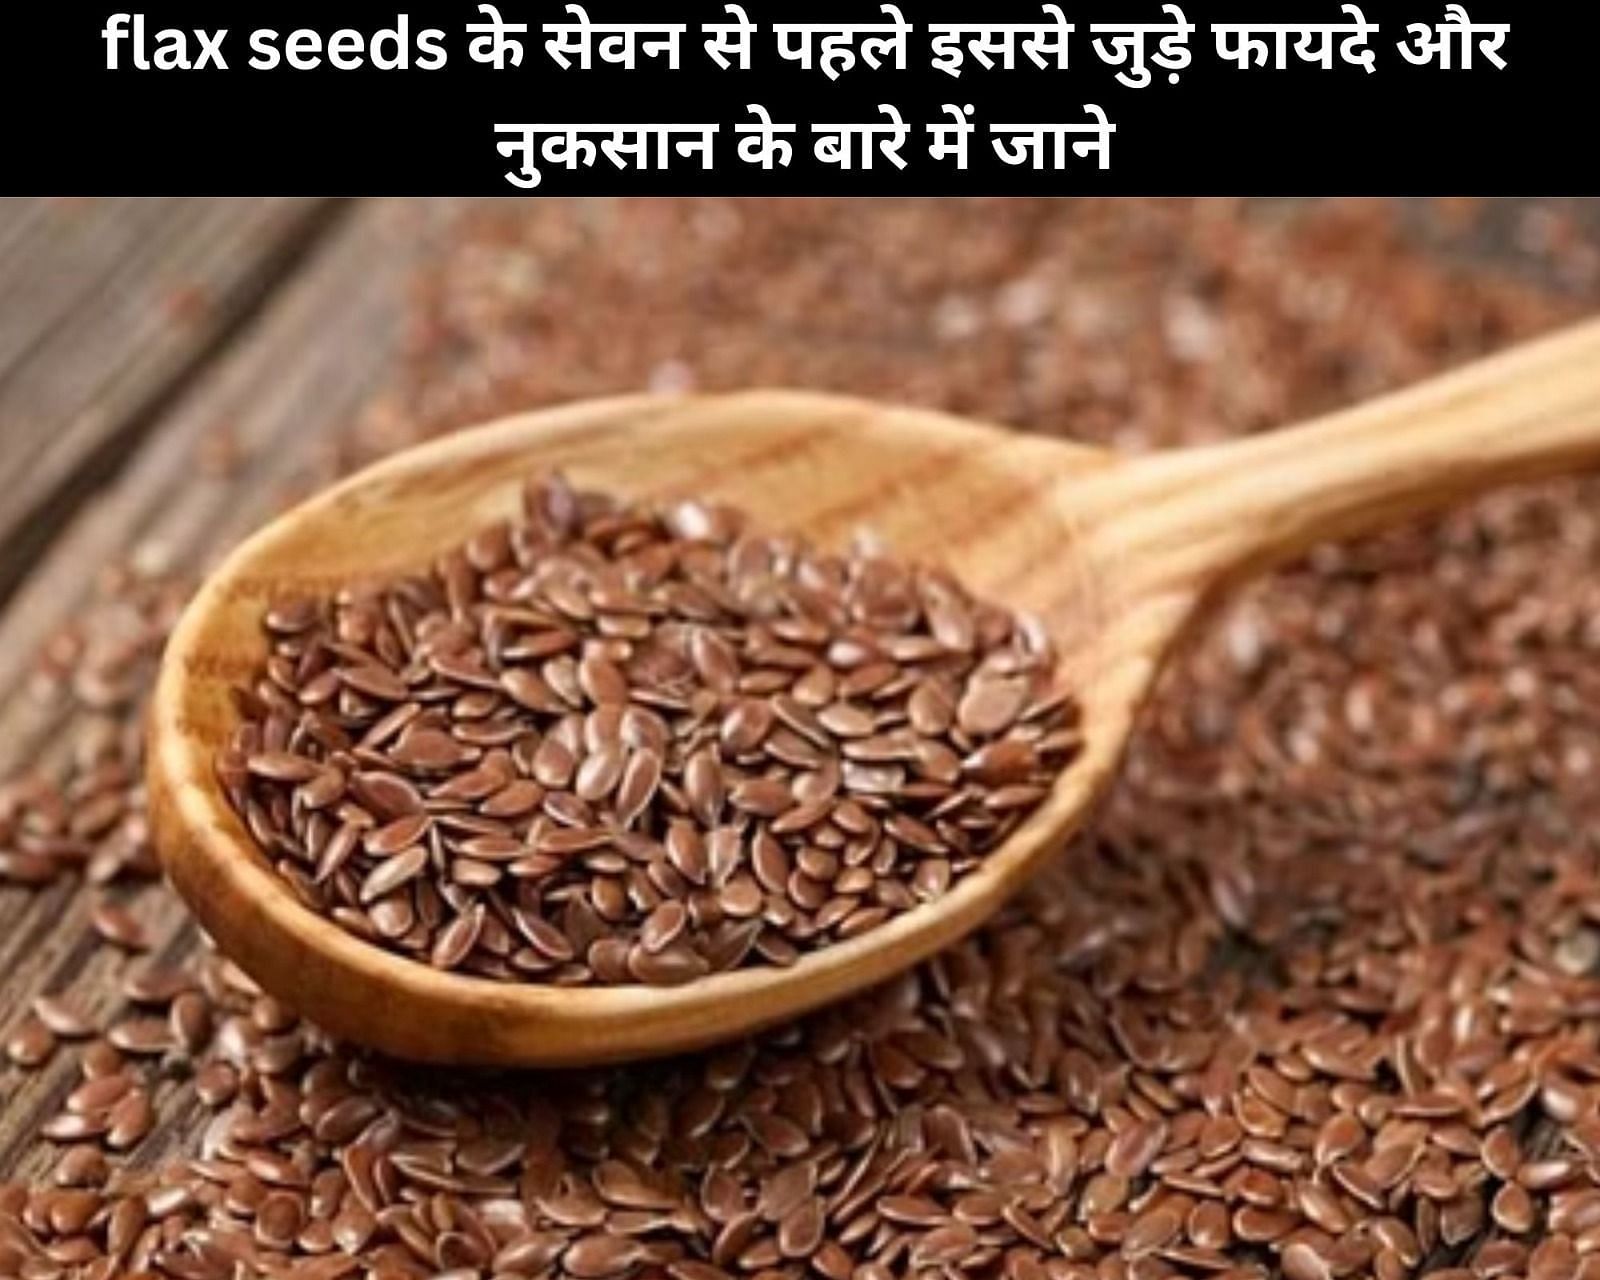 flax seeds के सेवन से पहले इससे जुड़े 4 फायदे और 4 नुकसान के बारे में जाने (फोटो - sportskeedaहिन्दी)